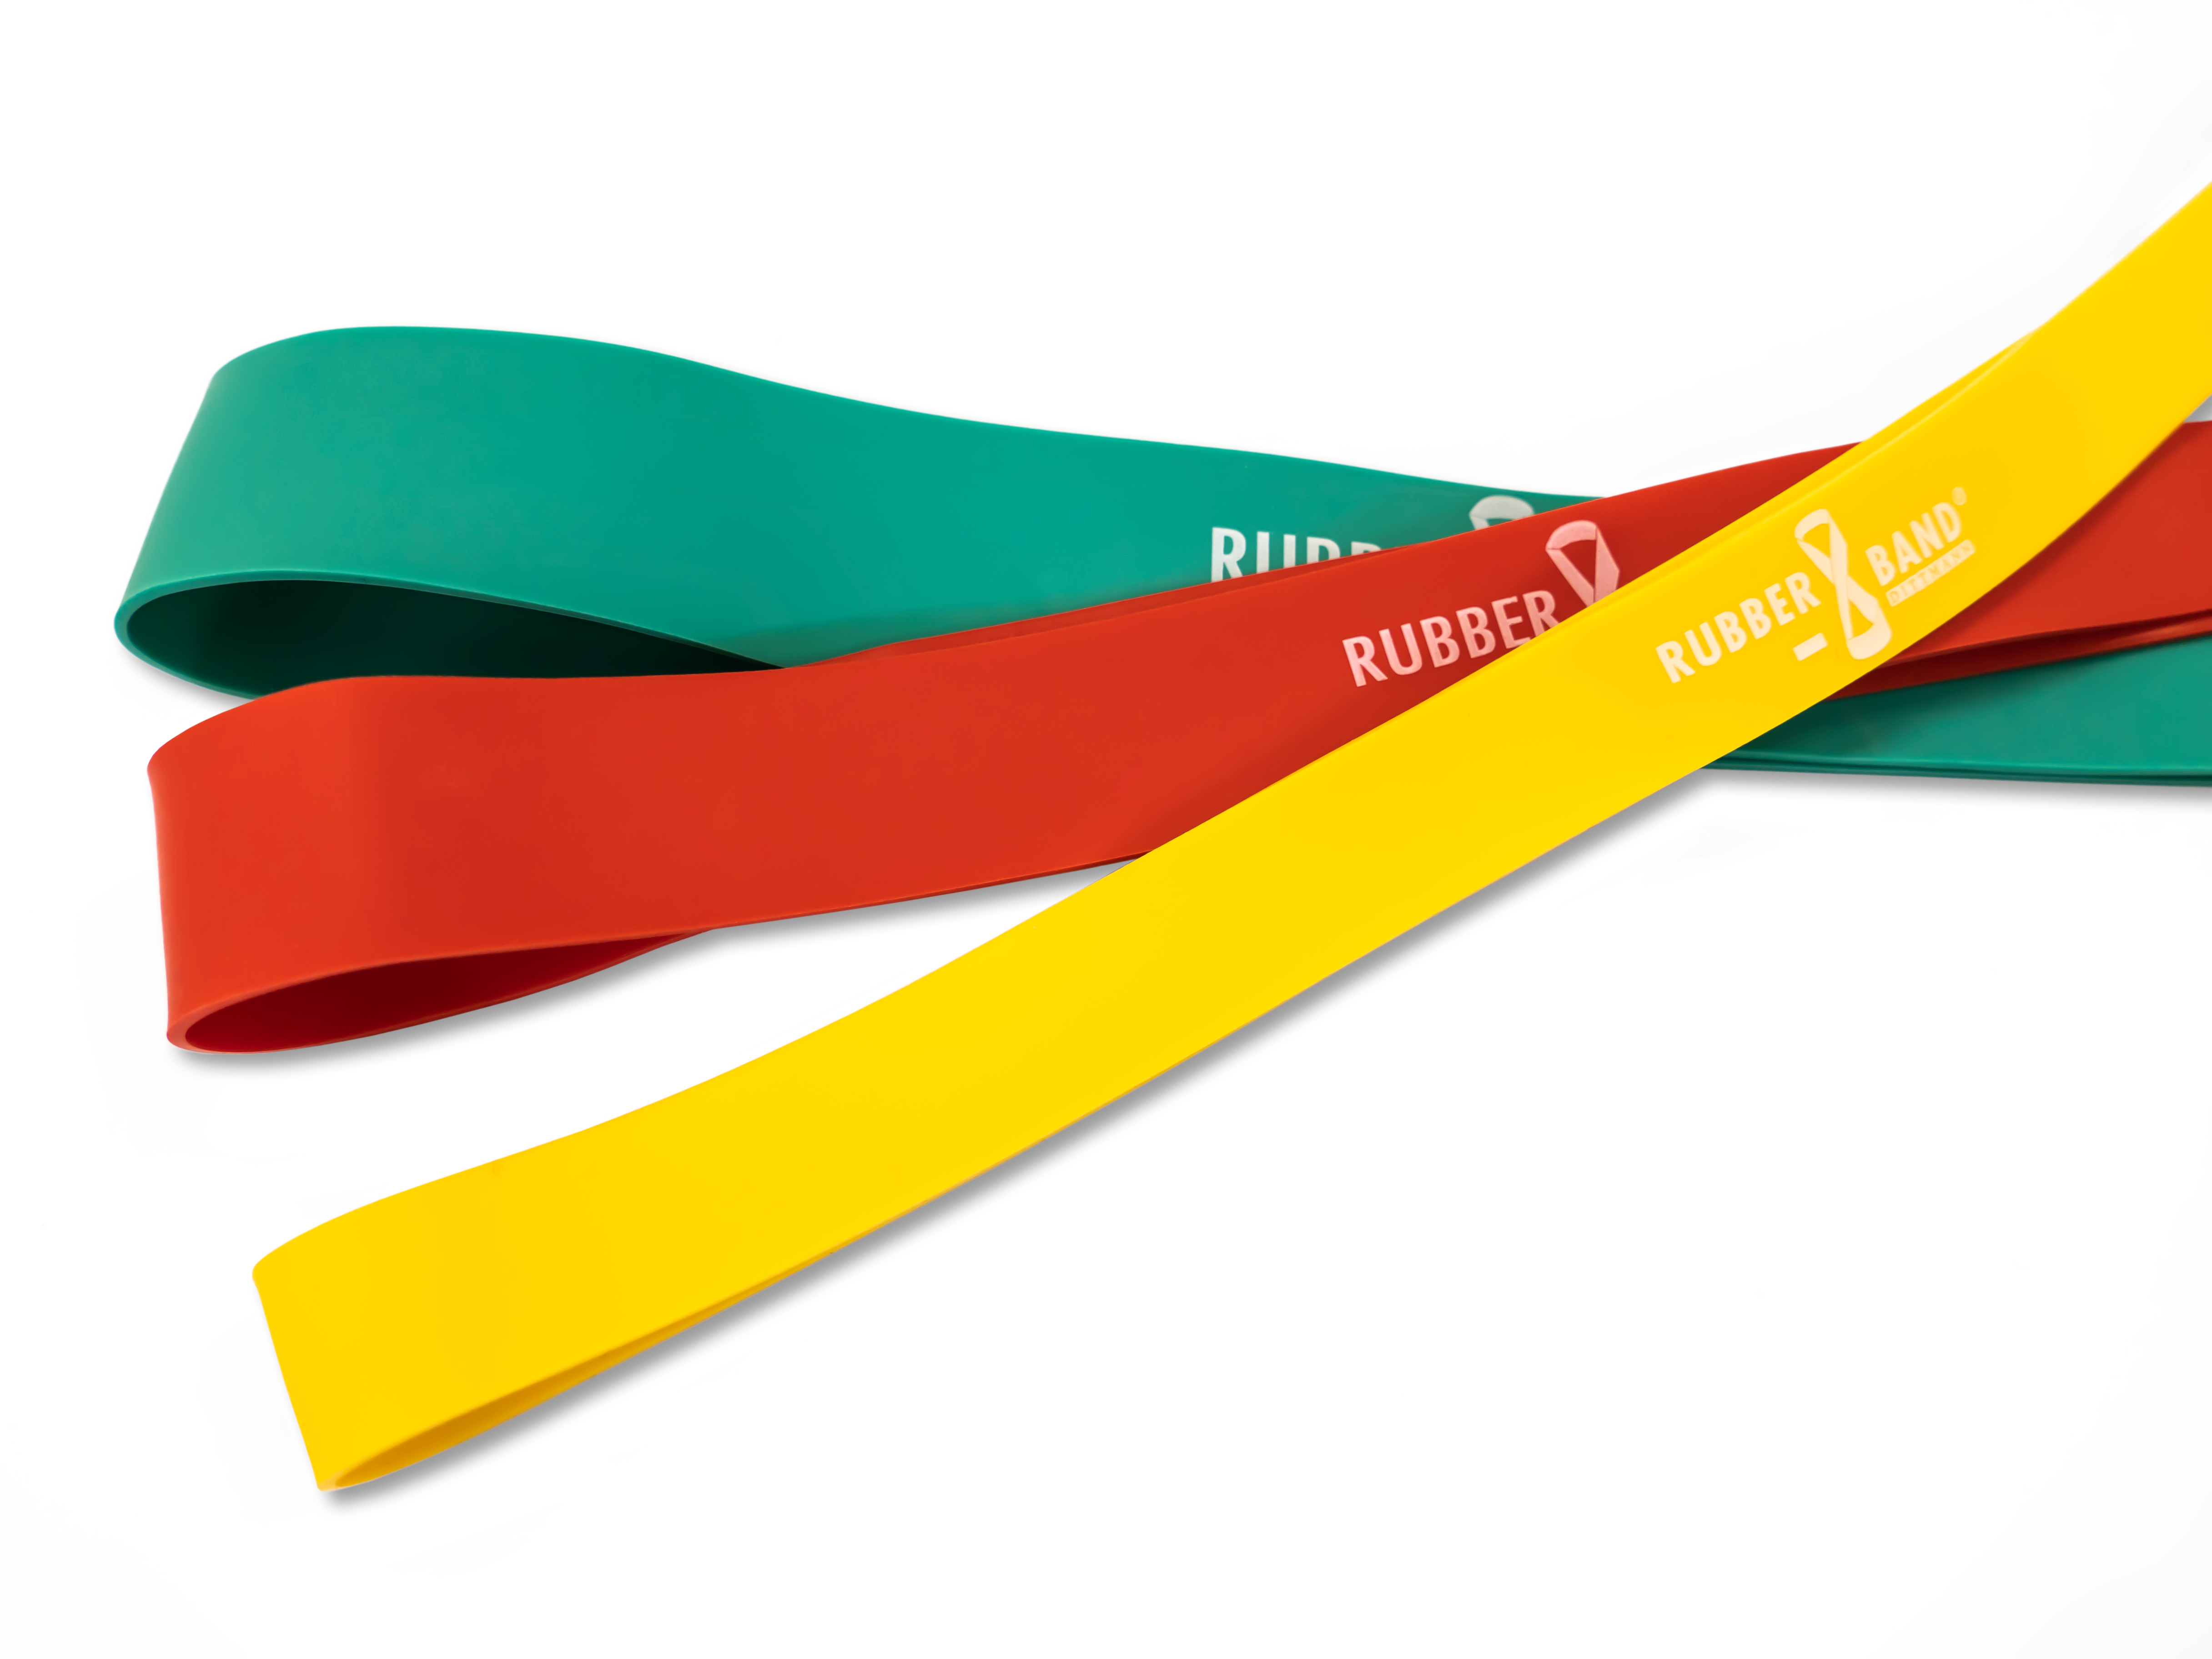 Dittmann Rubberband mit Logo über kreuz liegend alle drei Farben